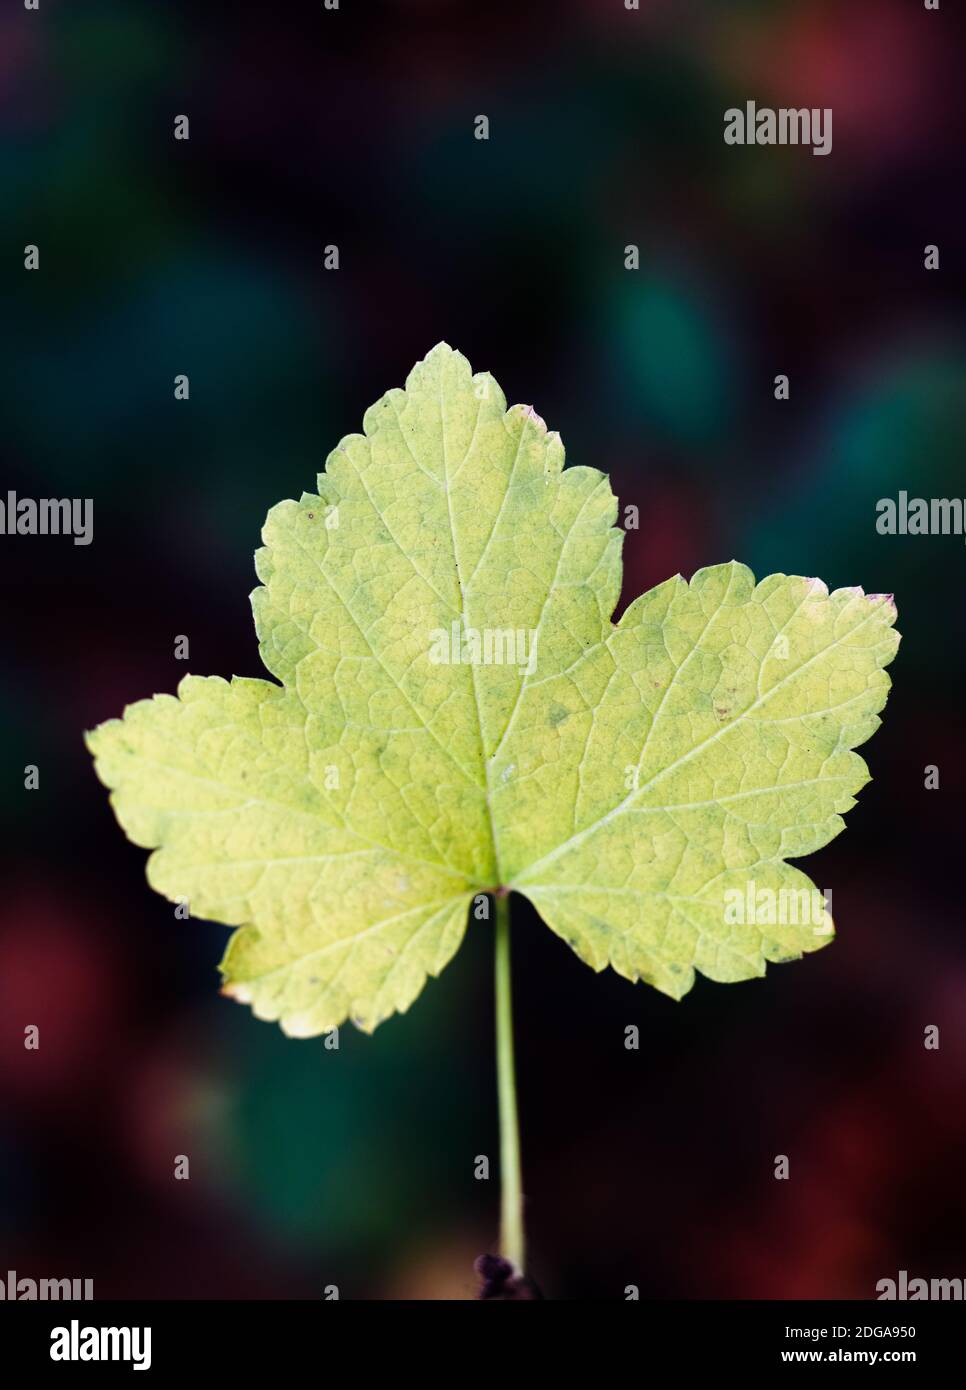 Ein noch angeschlossener Herbst einfache Blattform mit verblassendem Grün Farbe durch Senkung der Chlorophyllspiegel - Zersetzungsrate von Chlorophyll Stockfoto